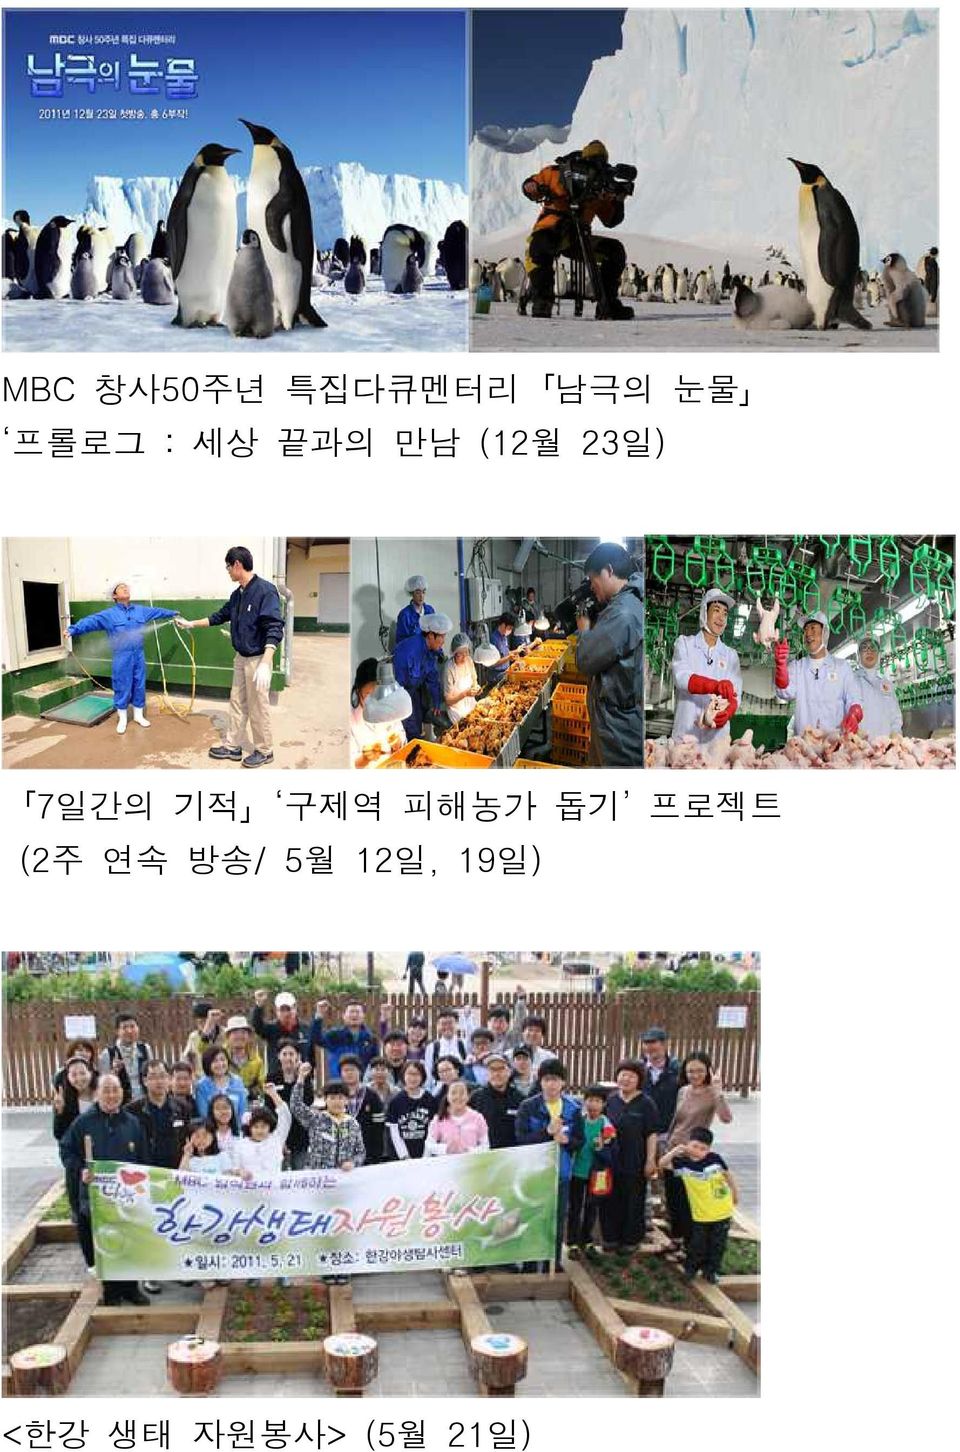 구제역 피해농가 돕기 프로젝트 (2주 연속 방송/ 5월